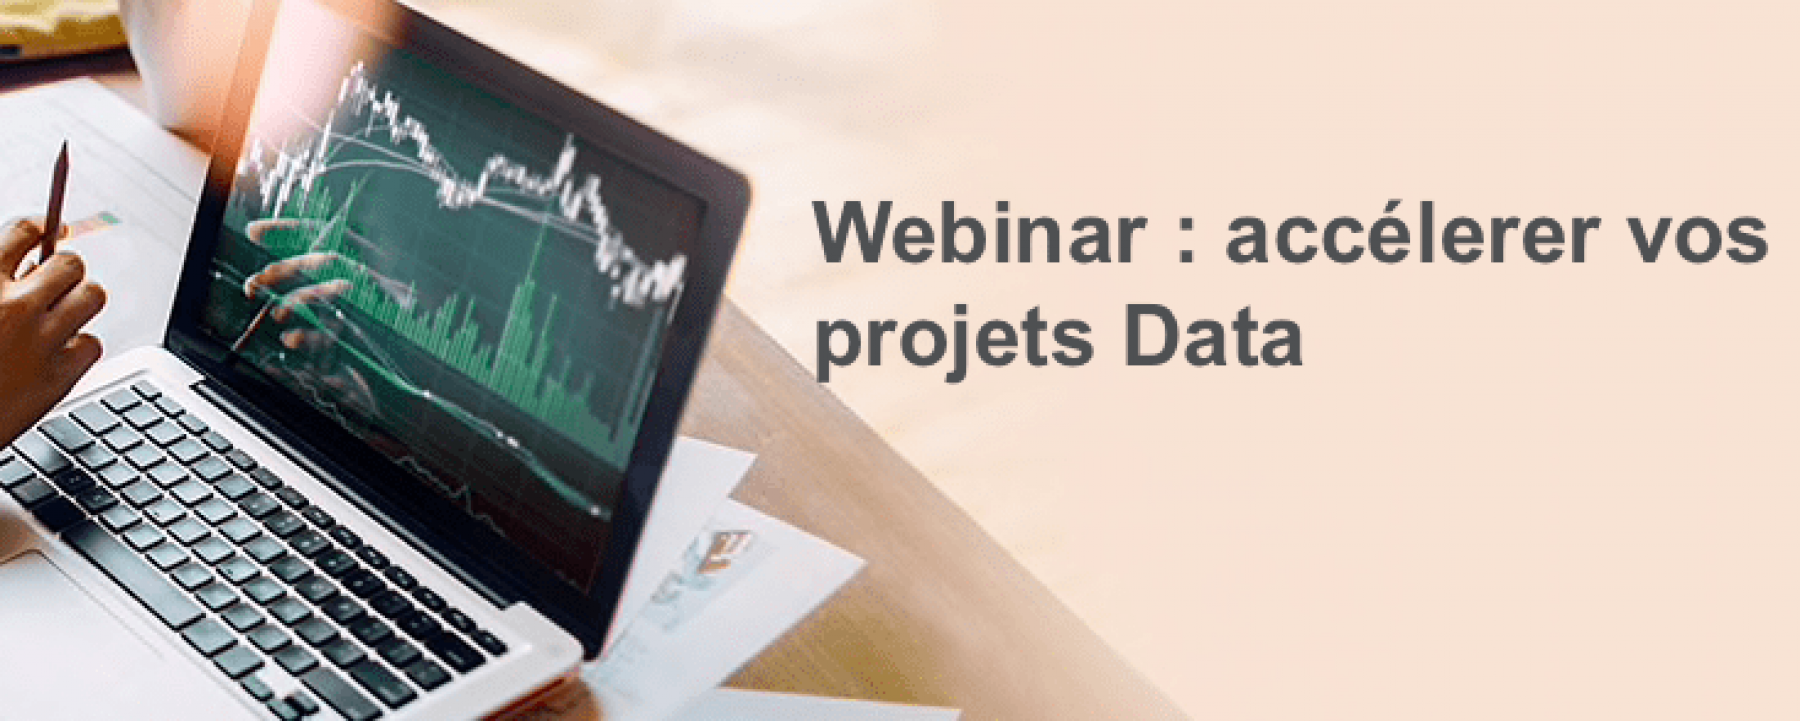 Webinar Accélérer vos projets Data, le 29 avril 2020, organisé par Oracle 